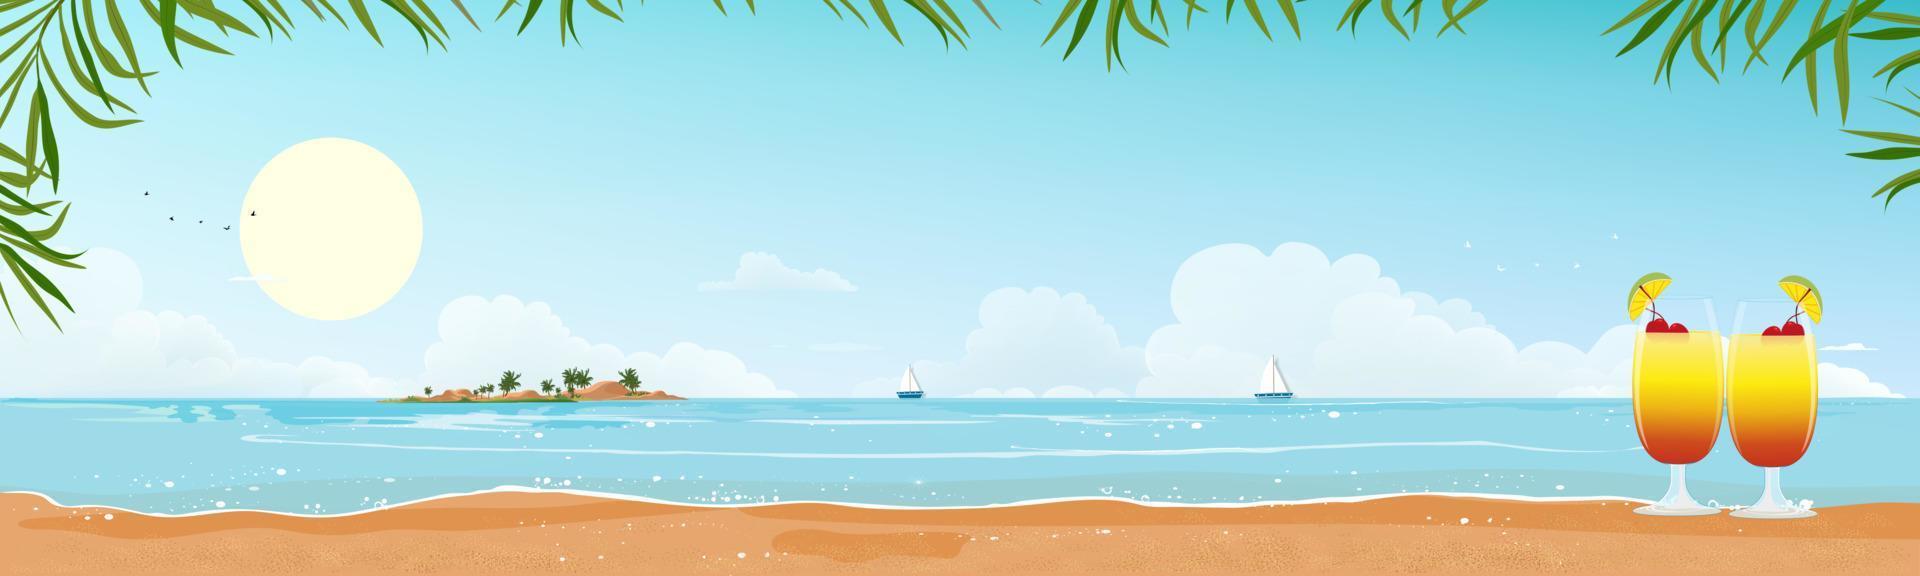 panoramisch uitzicht tropisch zeegezicht van blauwe oceaan en kokospalm op eiland, panoramisch zee strand en zand met blauwe lucht, vector illustratie vlakke stijl aard van landschap aan zee voor zomervakantie